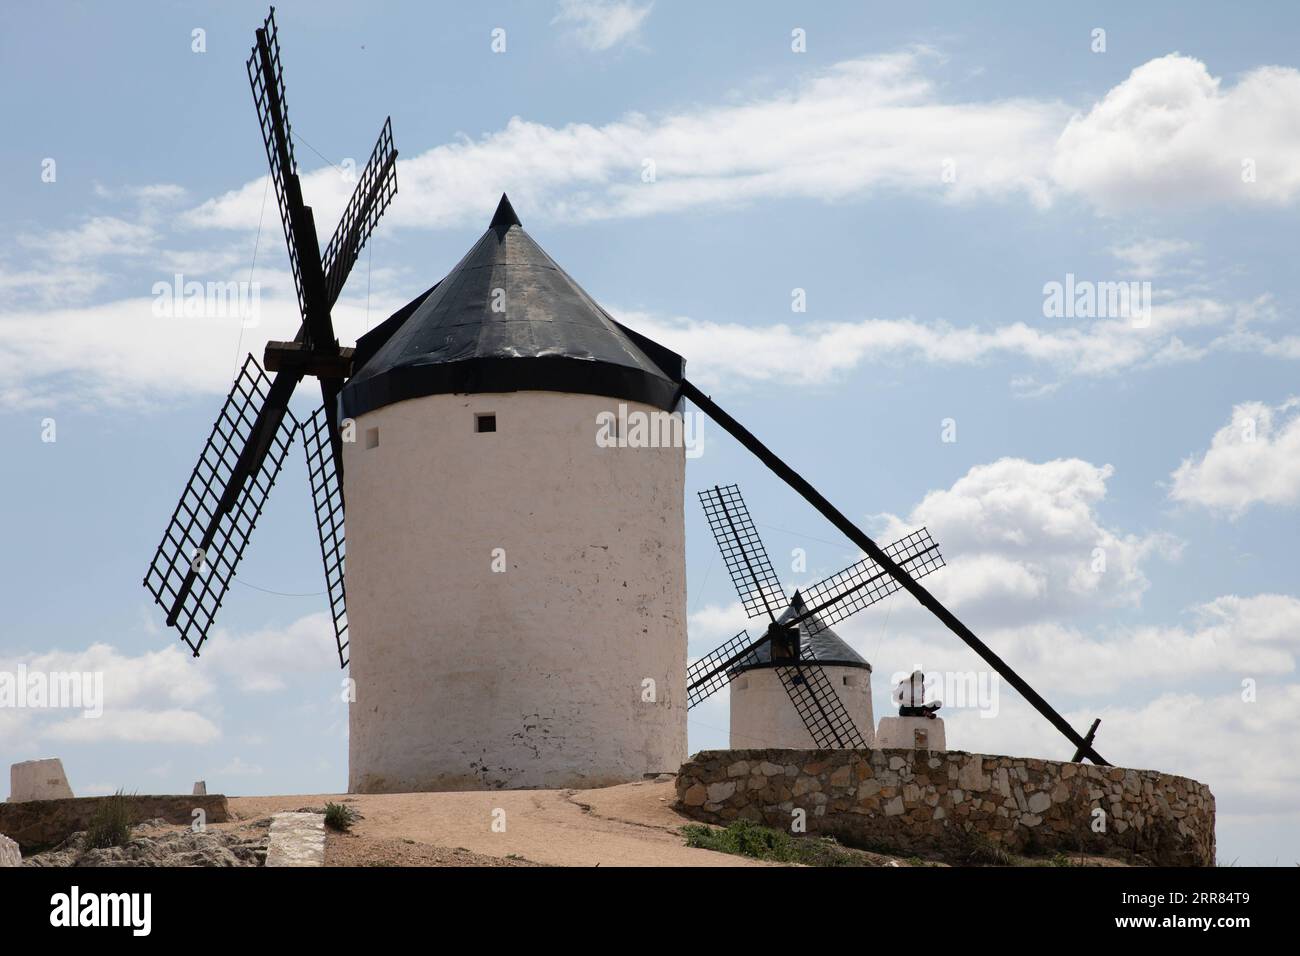 210417 -- CONSUEGRA, le 17 avril 2021 -- Une femme est assise devant des moulins à vent à Consuegra, en Espagne, sur Apirl 17, 2021. Le moulin à vent est l'un des paysages représentatifs de la région de Castille-la Manche en Espagne. ESPAGNE-CONSUEGRA-MOULIN MengxDingbo PUBLICATIONxNOTxINxCHN Banque D'Images